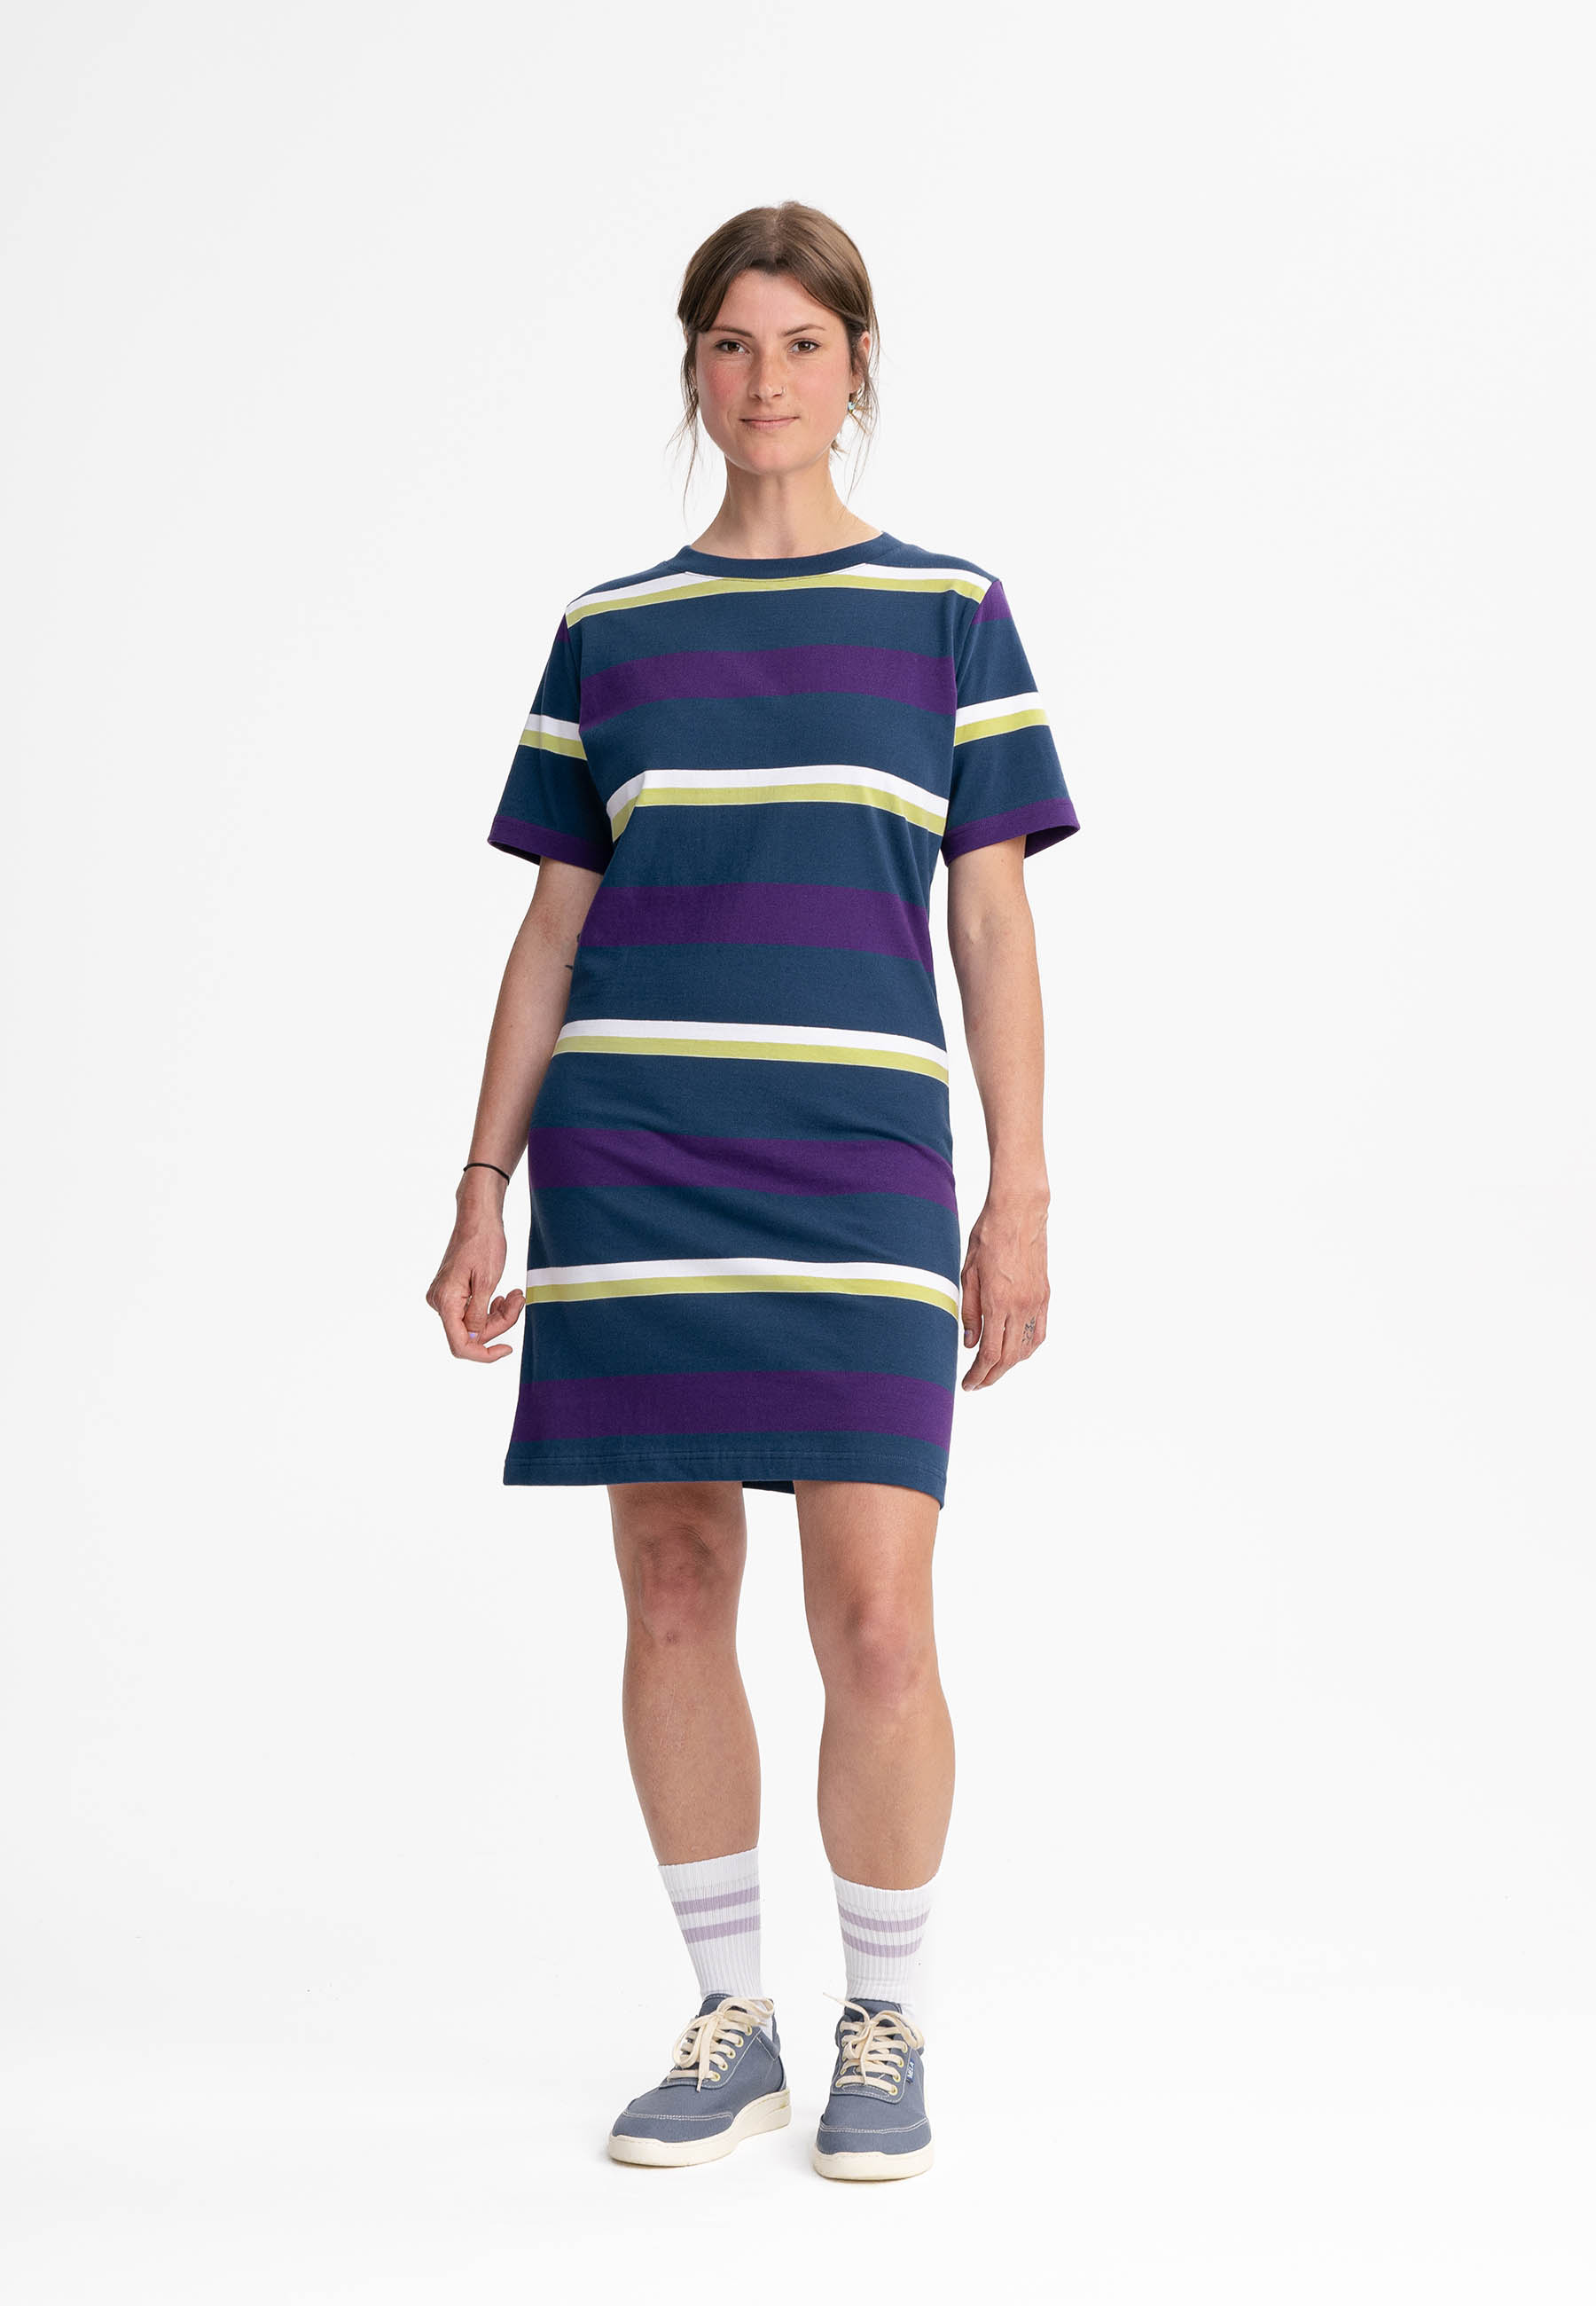 T-Shirt Dress Heavy Shrishti Stripes Blue Purple via Shop Like You Give a Damn